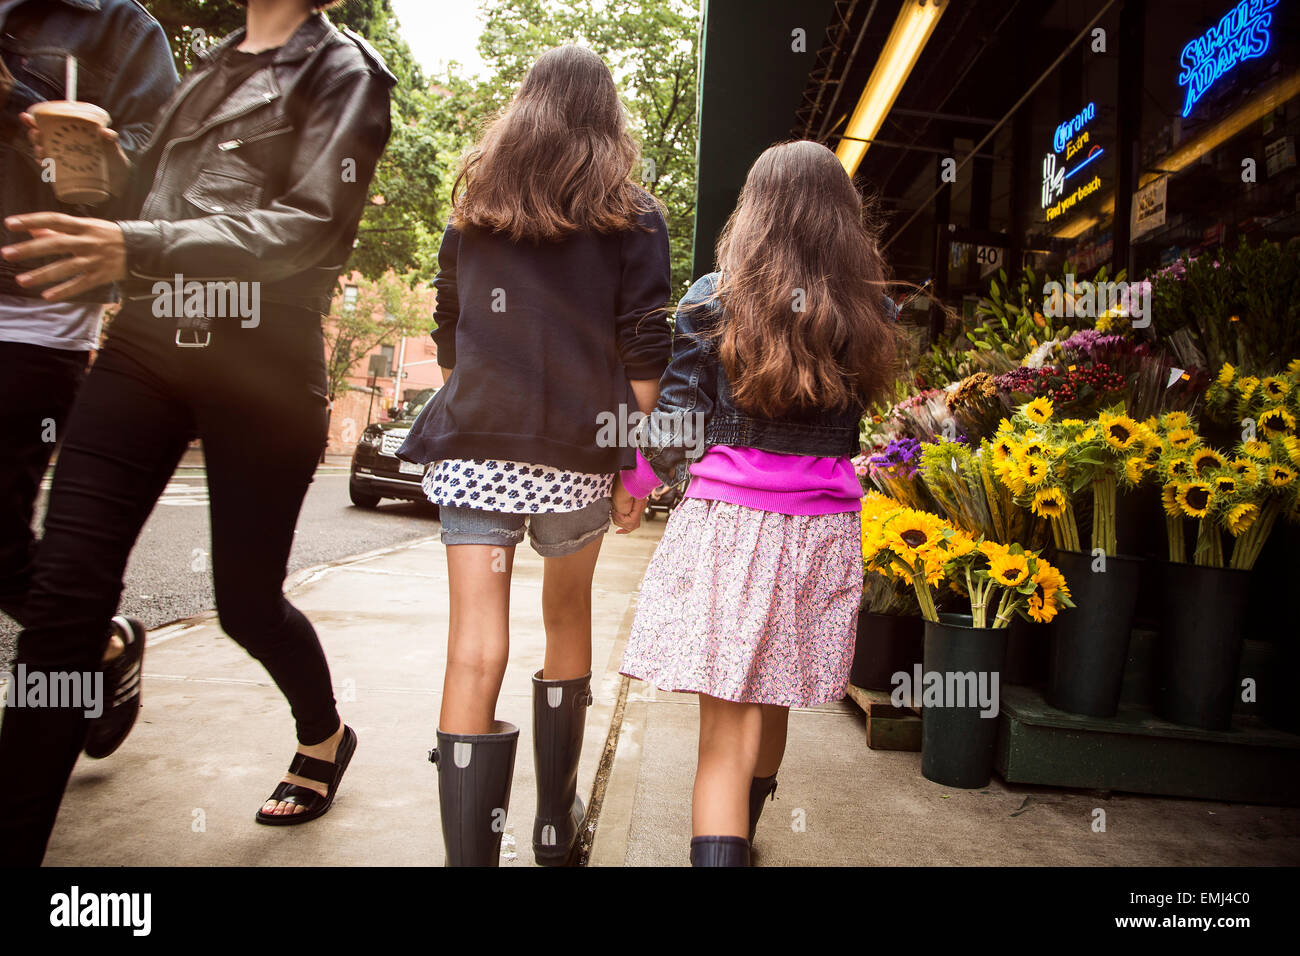 Zwei junge Mädchen Hand in Hand beim gehen auf Bürgersteig in der Nähe von Blume stehen, Rear View, New York City, USA Stockfoto